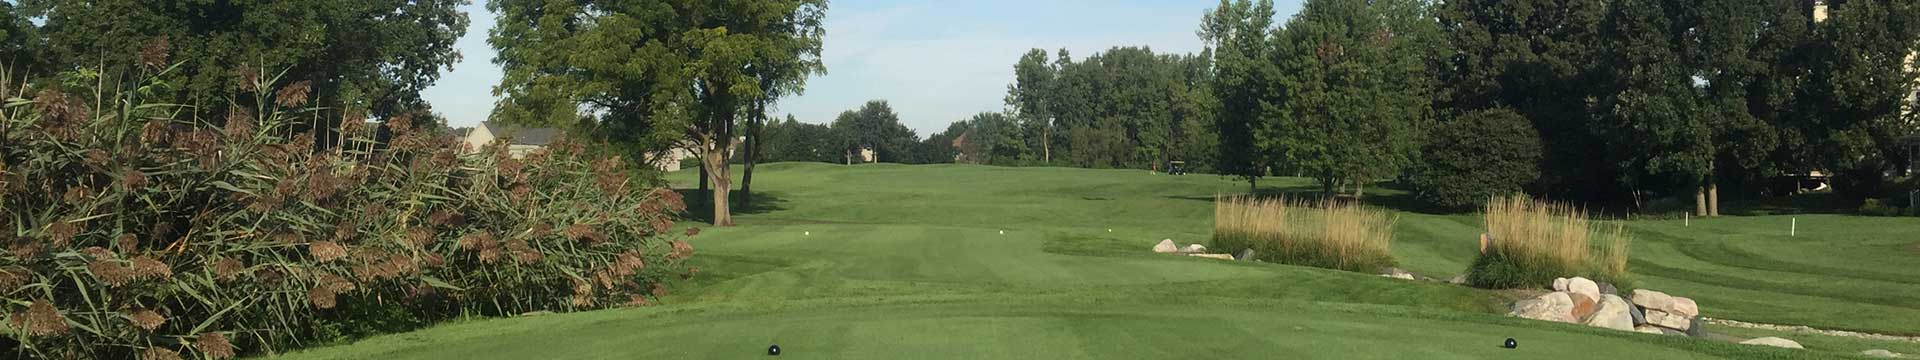 golf course near Detroit first tee